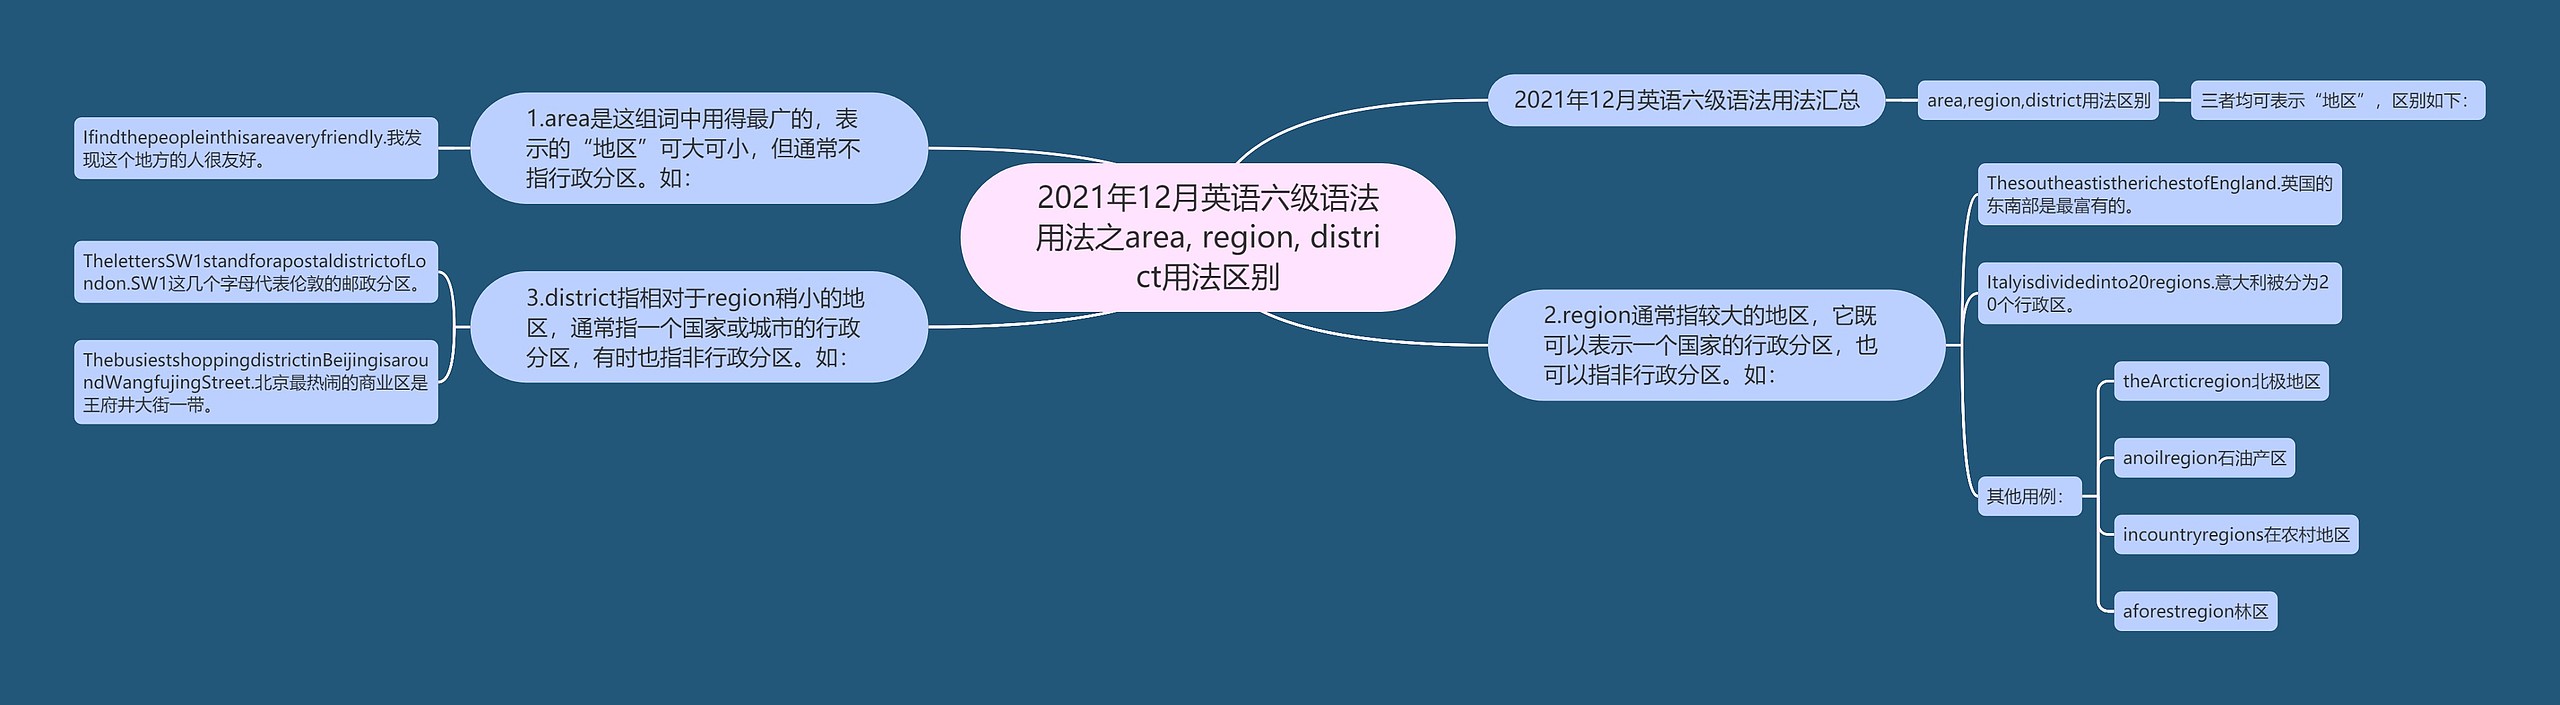 2021年12月英语六级语法用法之area, region, district用法区别